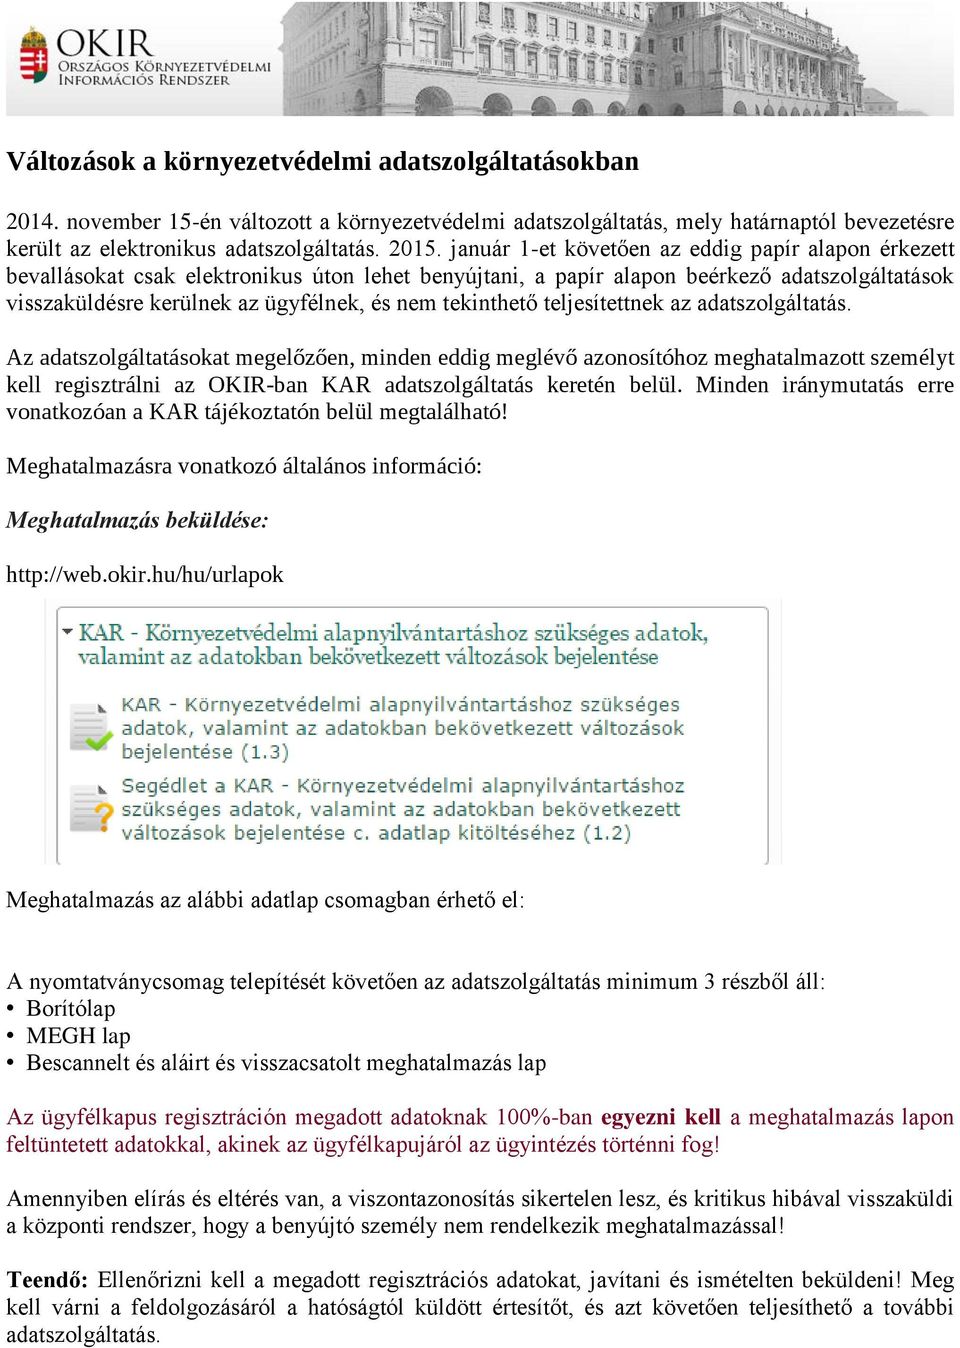 OKIR Országos Környezetvédelmi Információs Rendszer. EHIR modul  /Hulladékgazdálkodási osztály/ Készítette: Korózs Zsuzsa ügyintéző - PDF  Ingyenes letöltés